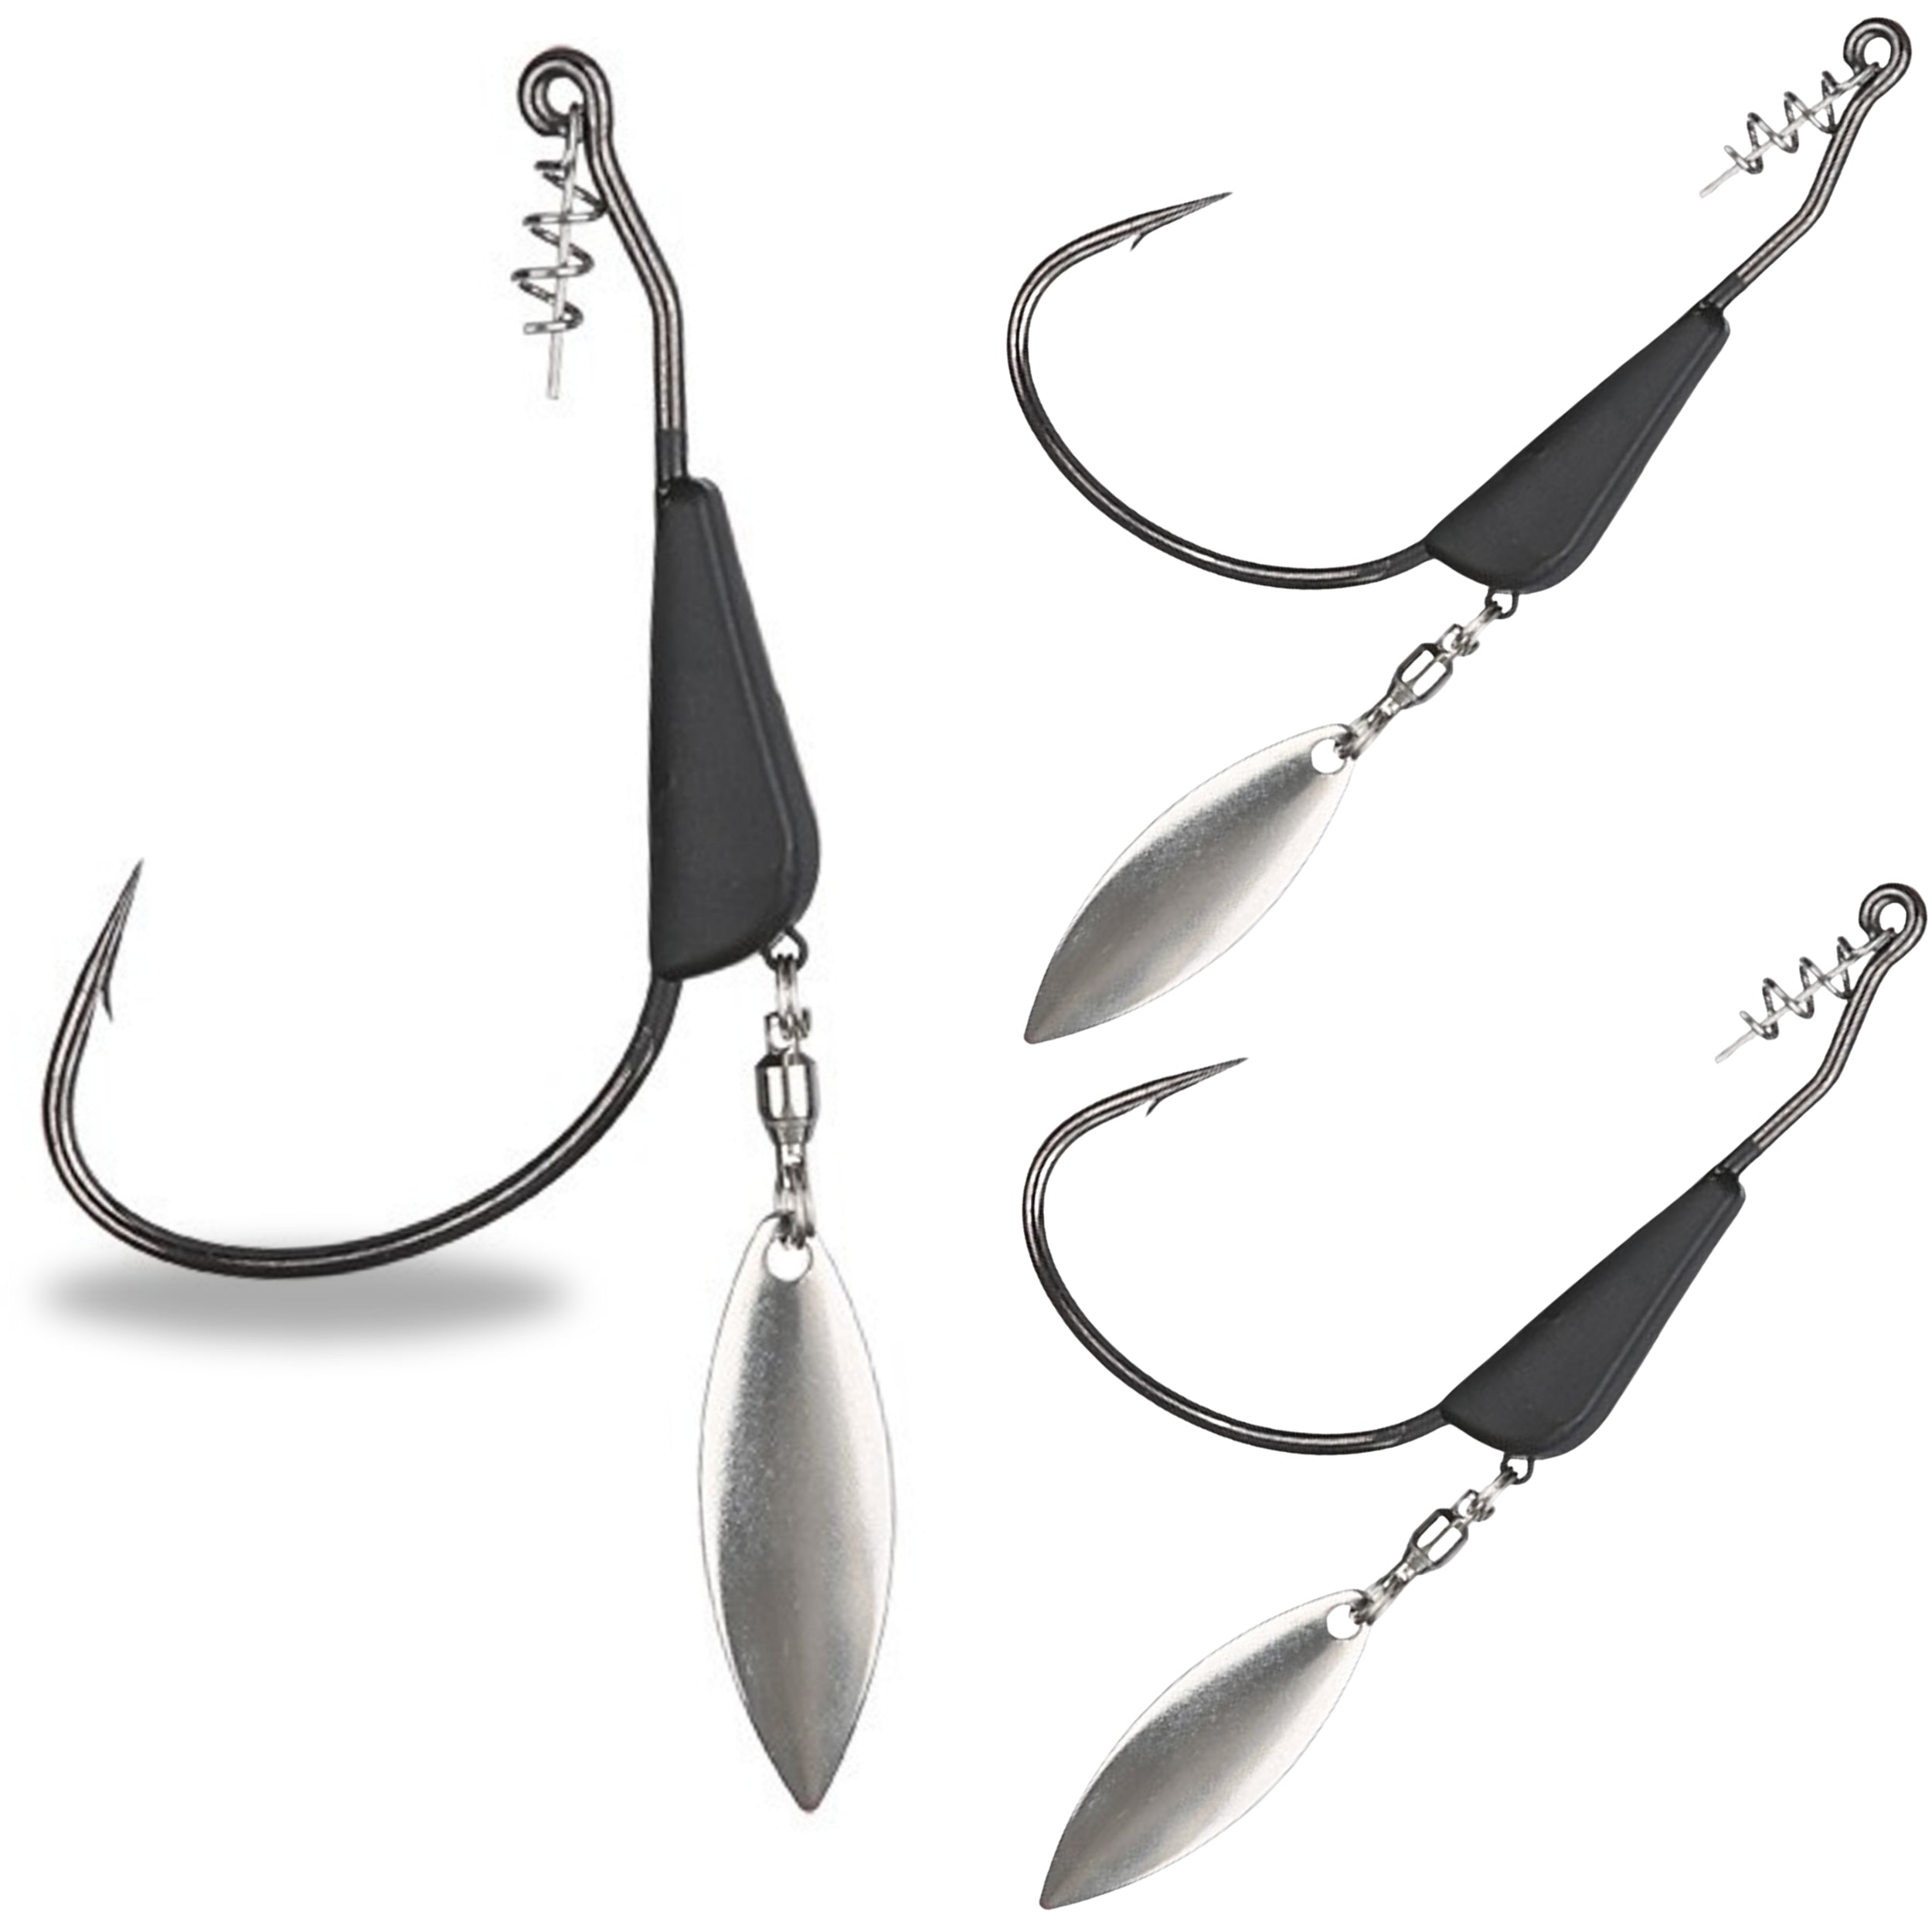 Sensation Tungsten Blade Swimbait Hook 5/0 - 3/16 Oz Silver Blade